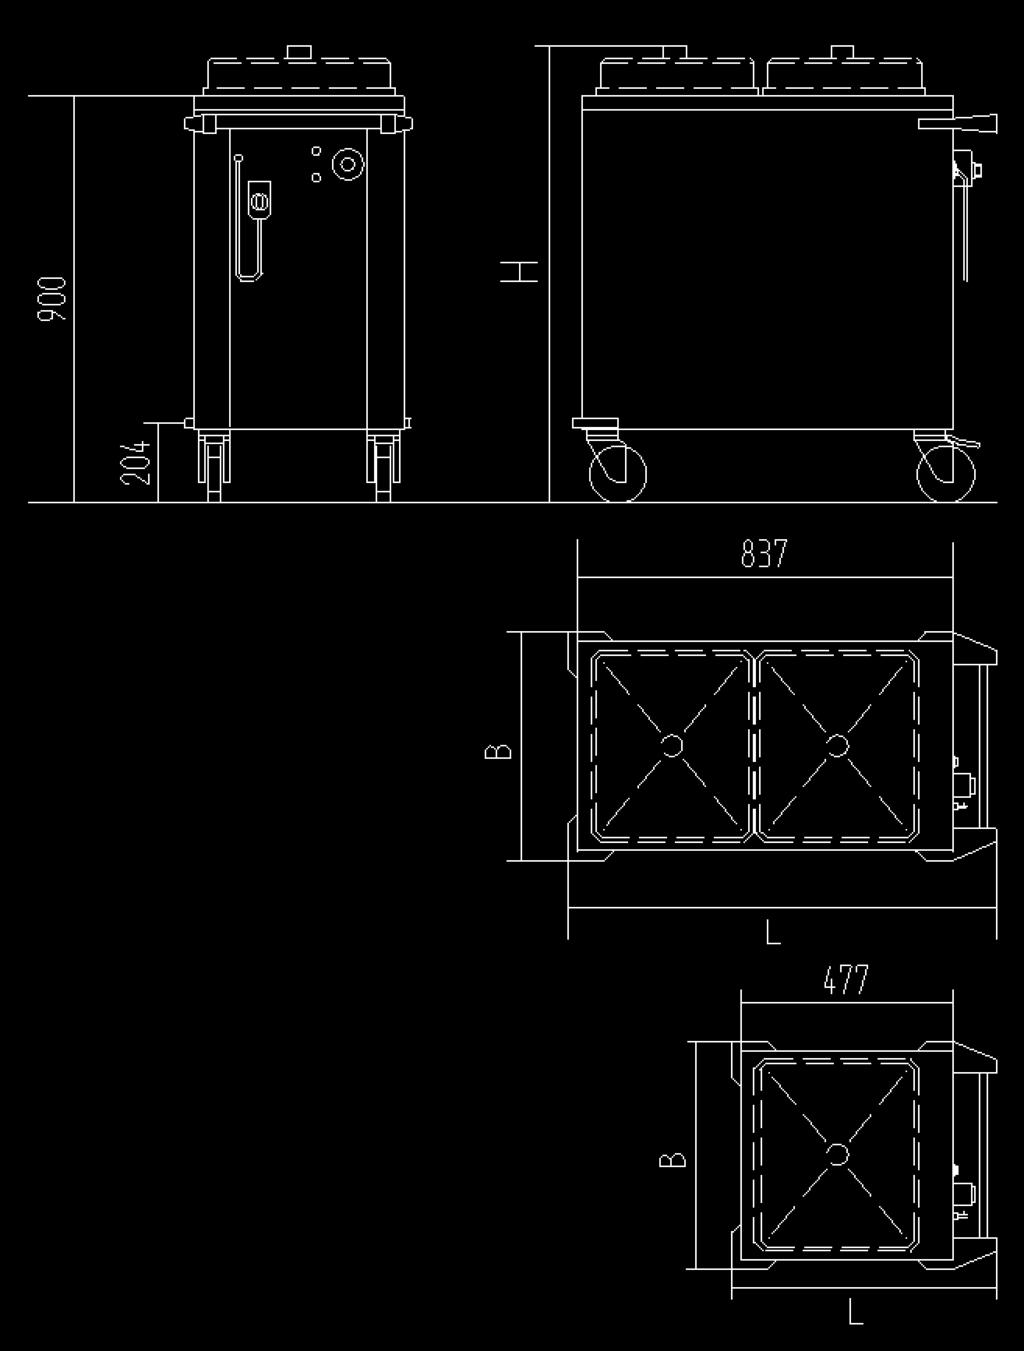 Das Spiralkabel mit Schuko-Stecker wird durch eine Steckereinhängevorrichtung aus Gui sicher gehalten. Ein/Aus-Kippschalter mit integrierter Kontrollleuchte.